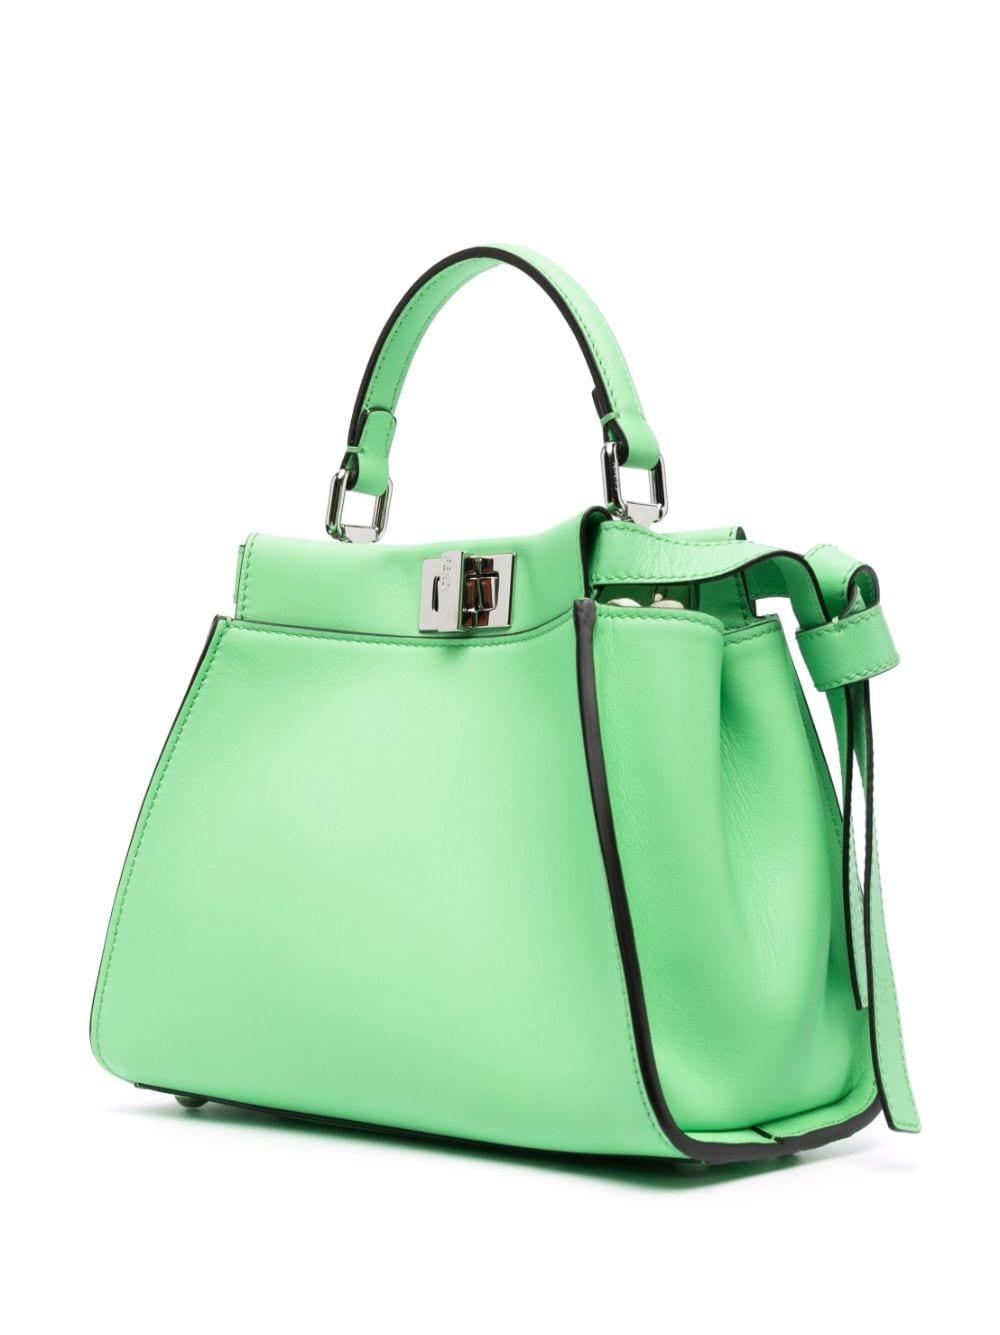 Peekaboo leather handbag Fendi Green in Leather - 36717947